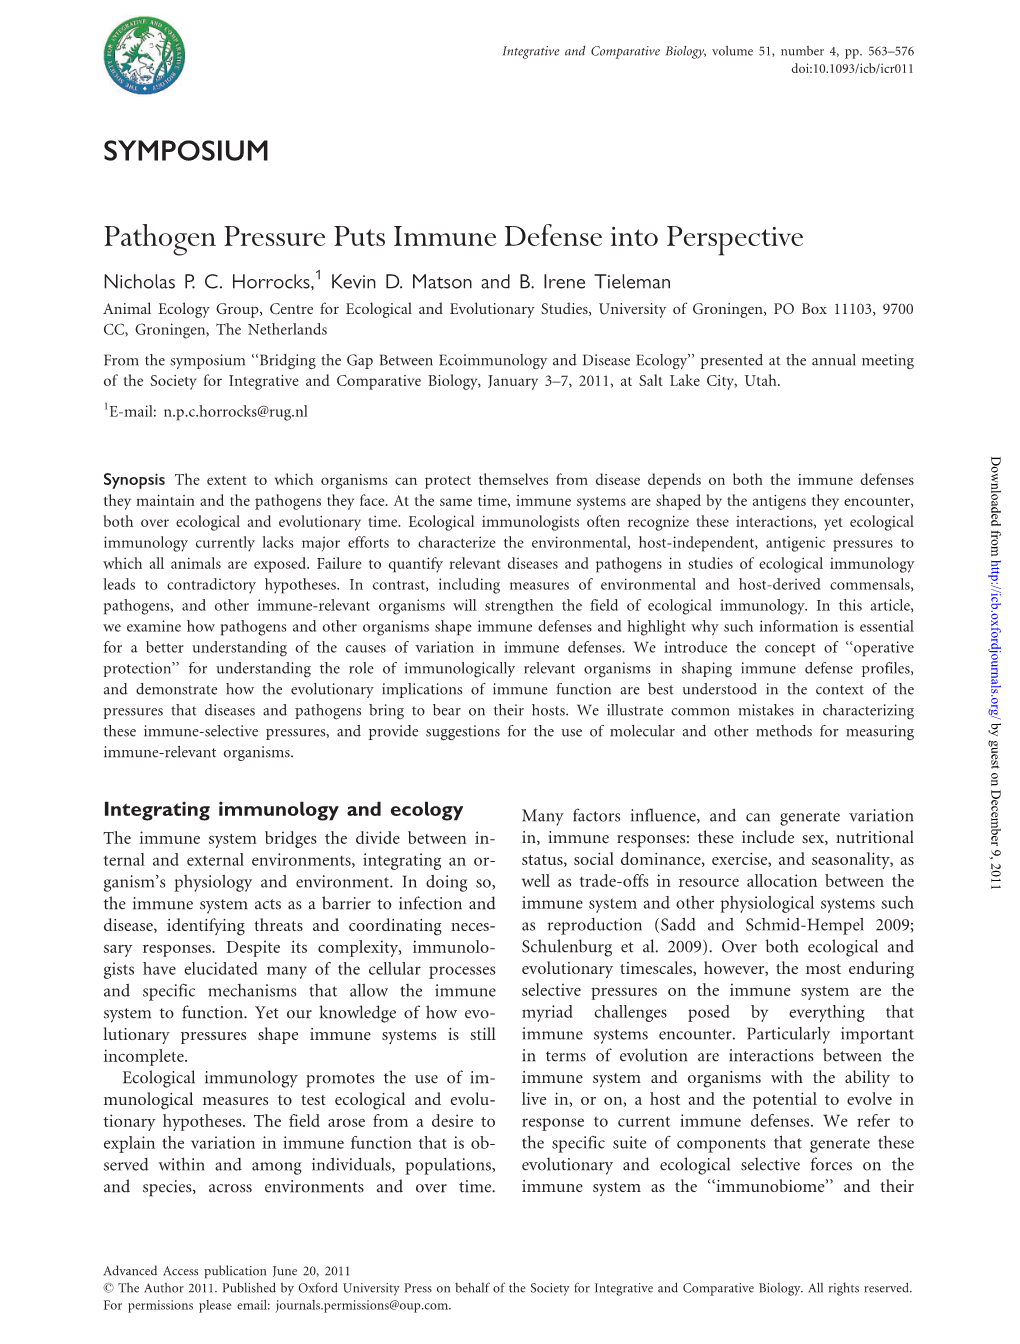 Pathogen Pressure Puts Immune Defense Into Perspective Nicholas P